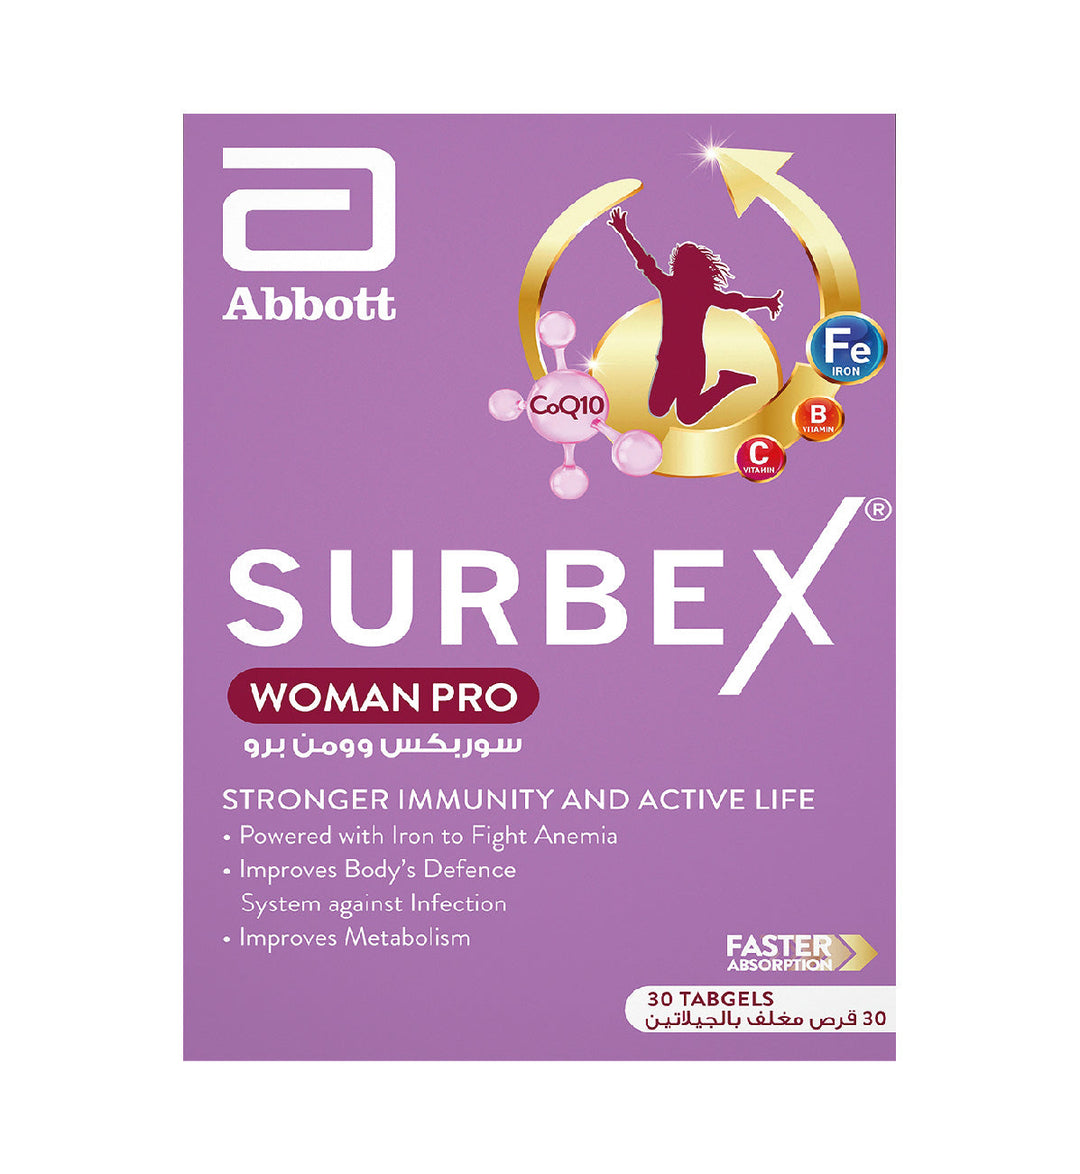 Surbex Woman Pro Tabgel 30's